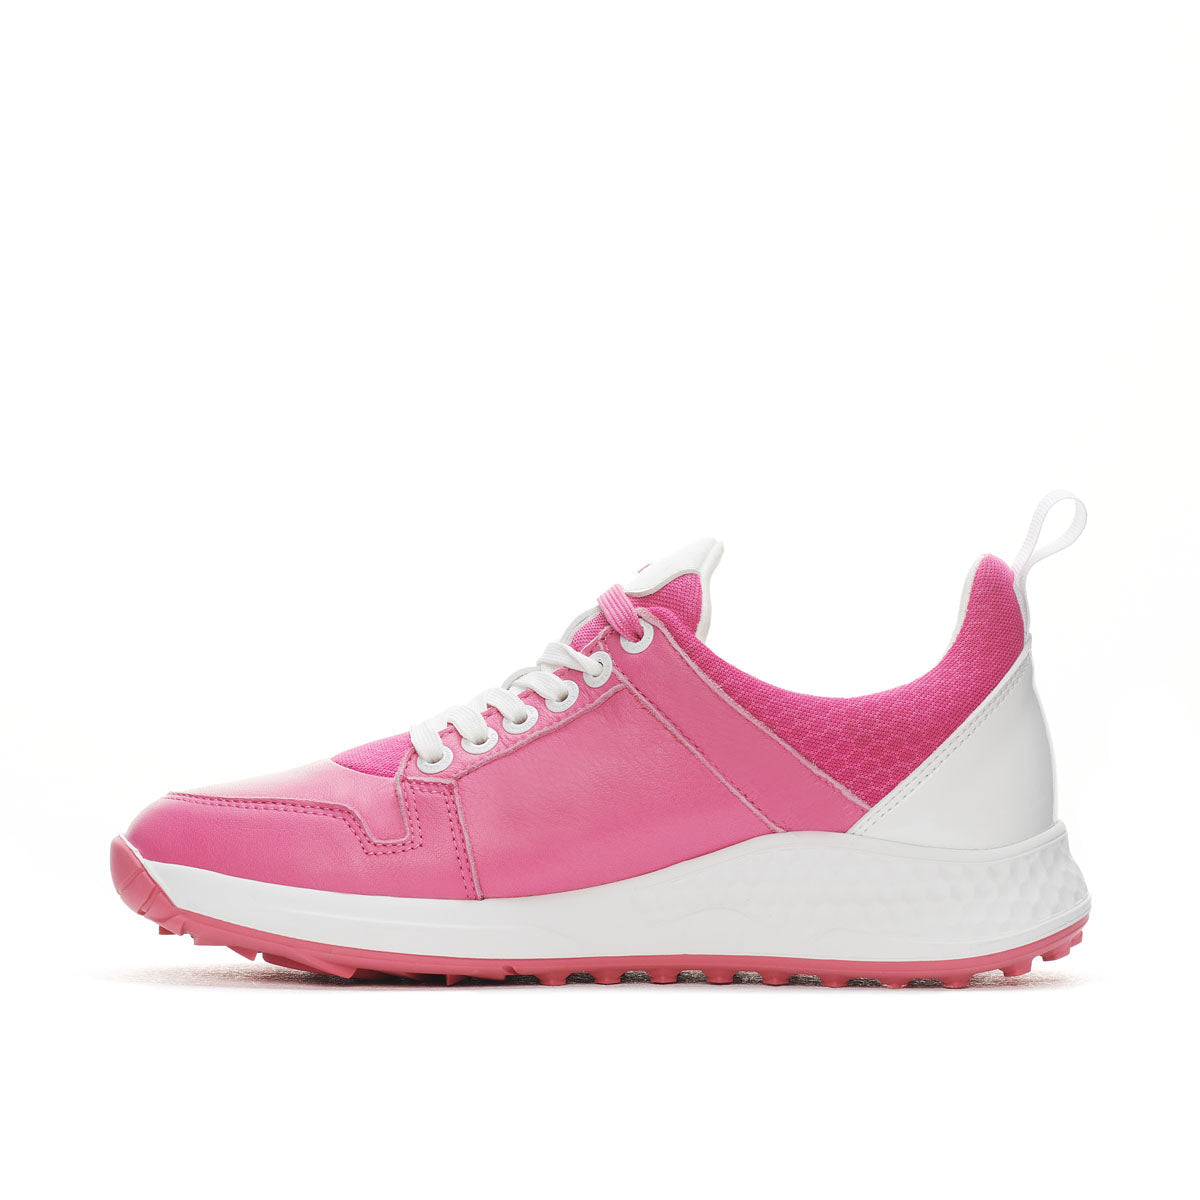 Siren - Roze Dames Golfschoen